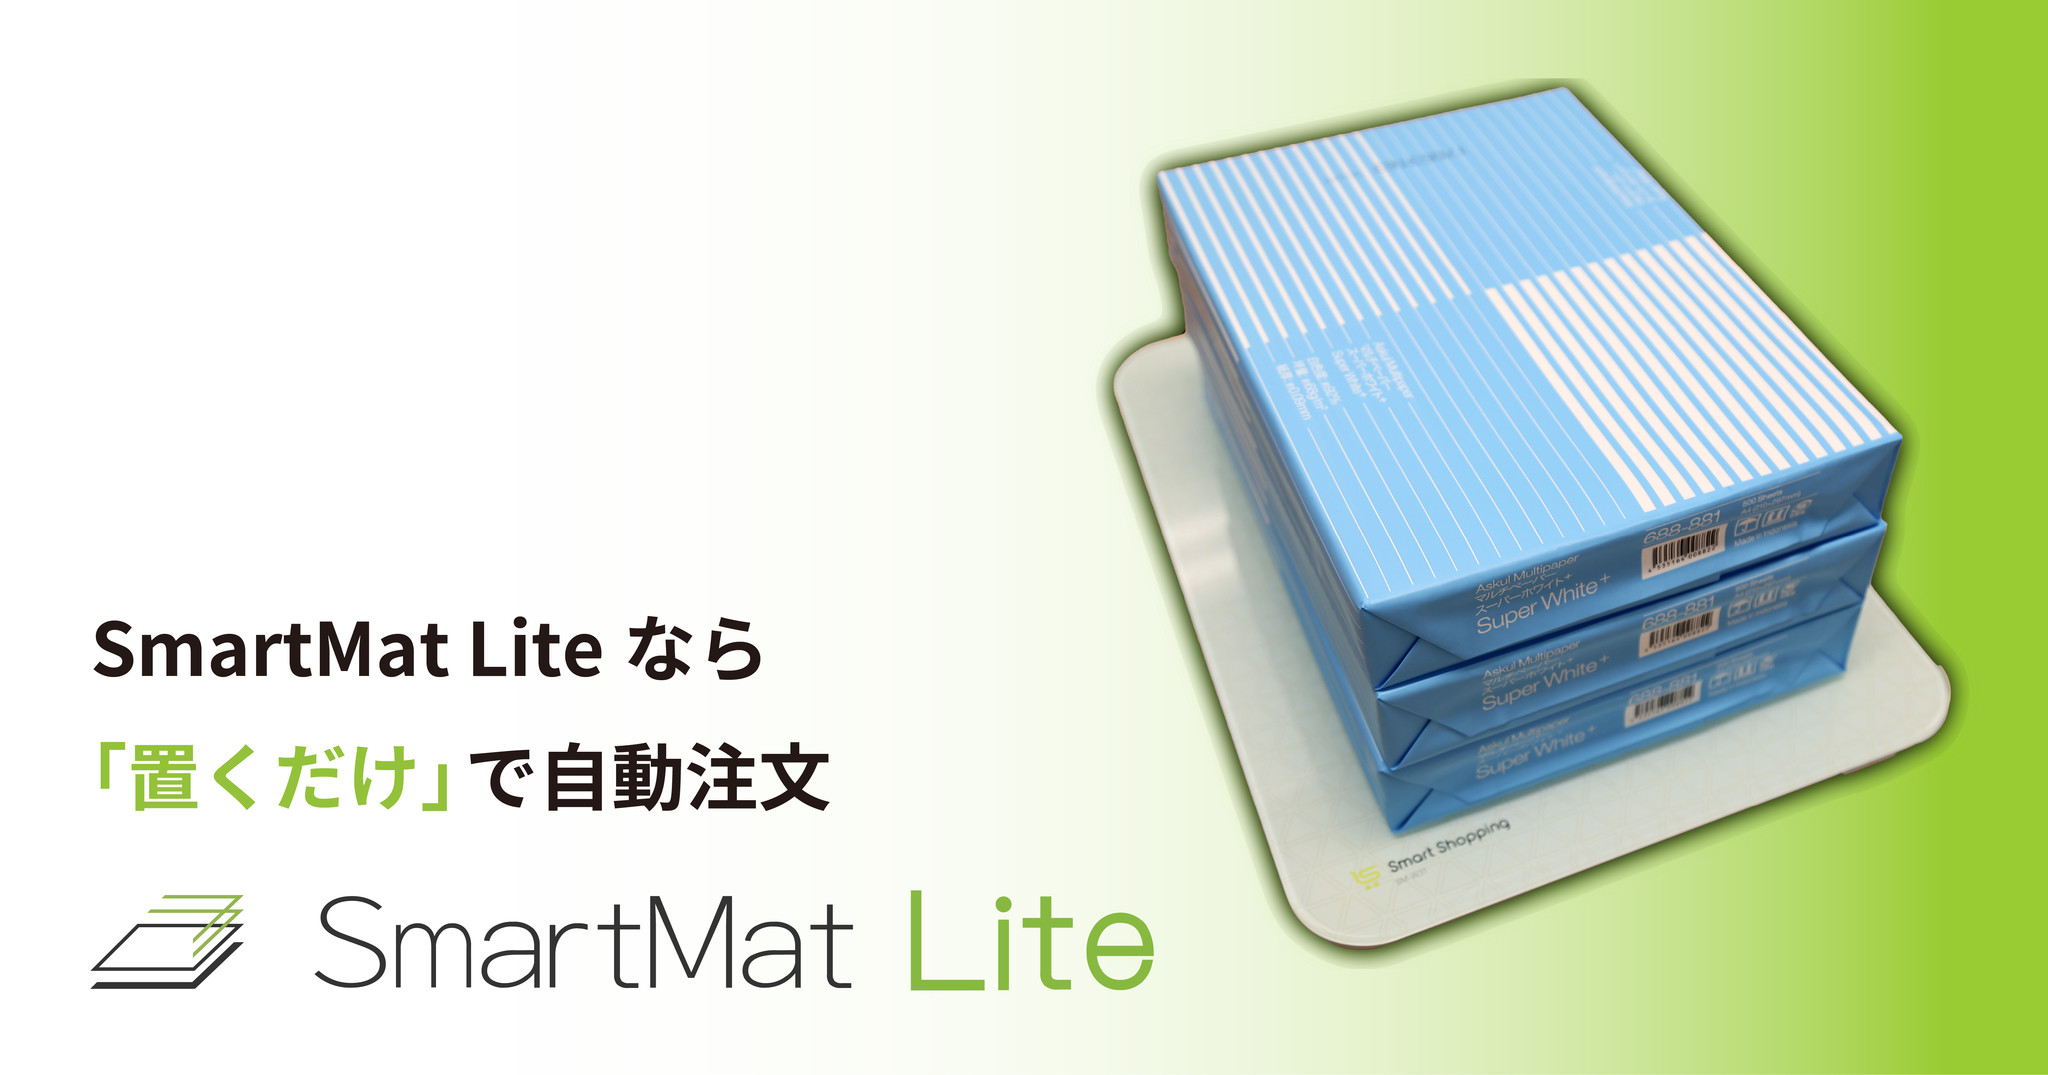 SmartMat Lite 減ったら自動でに再注文してくれるIoT - 通販